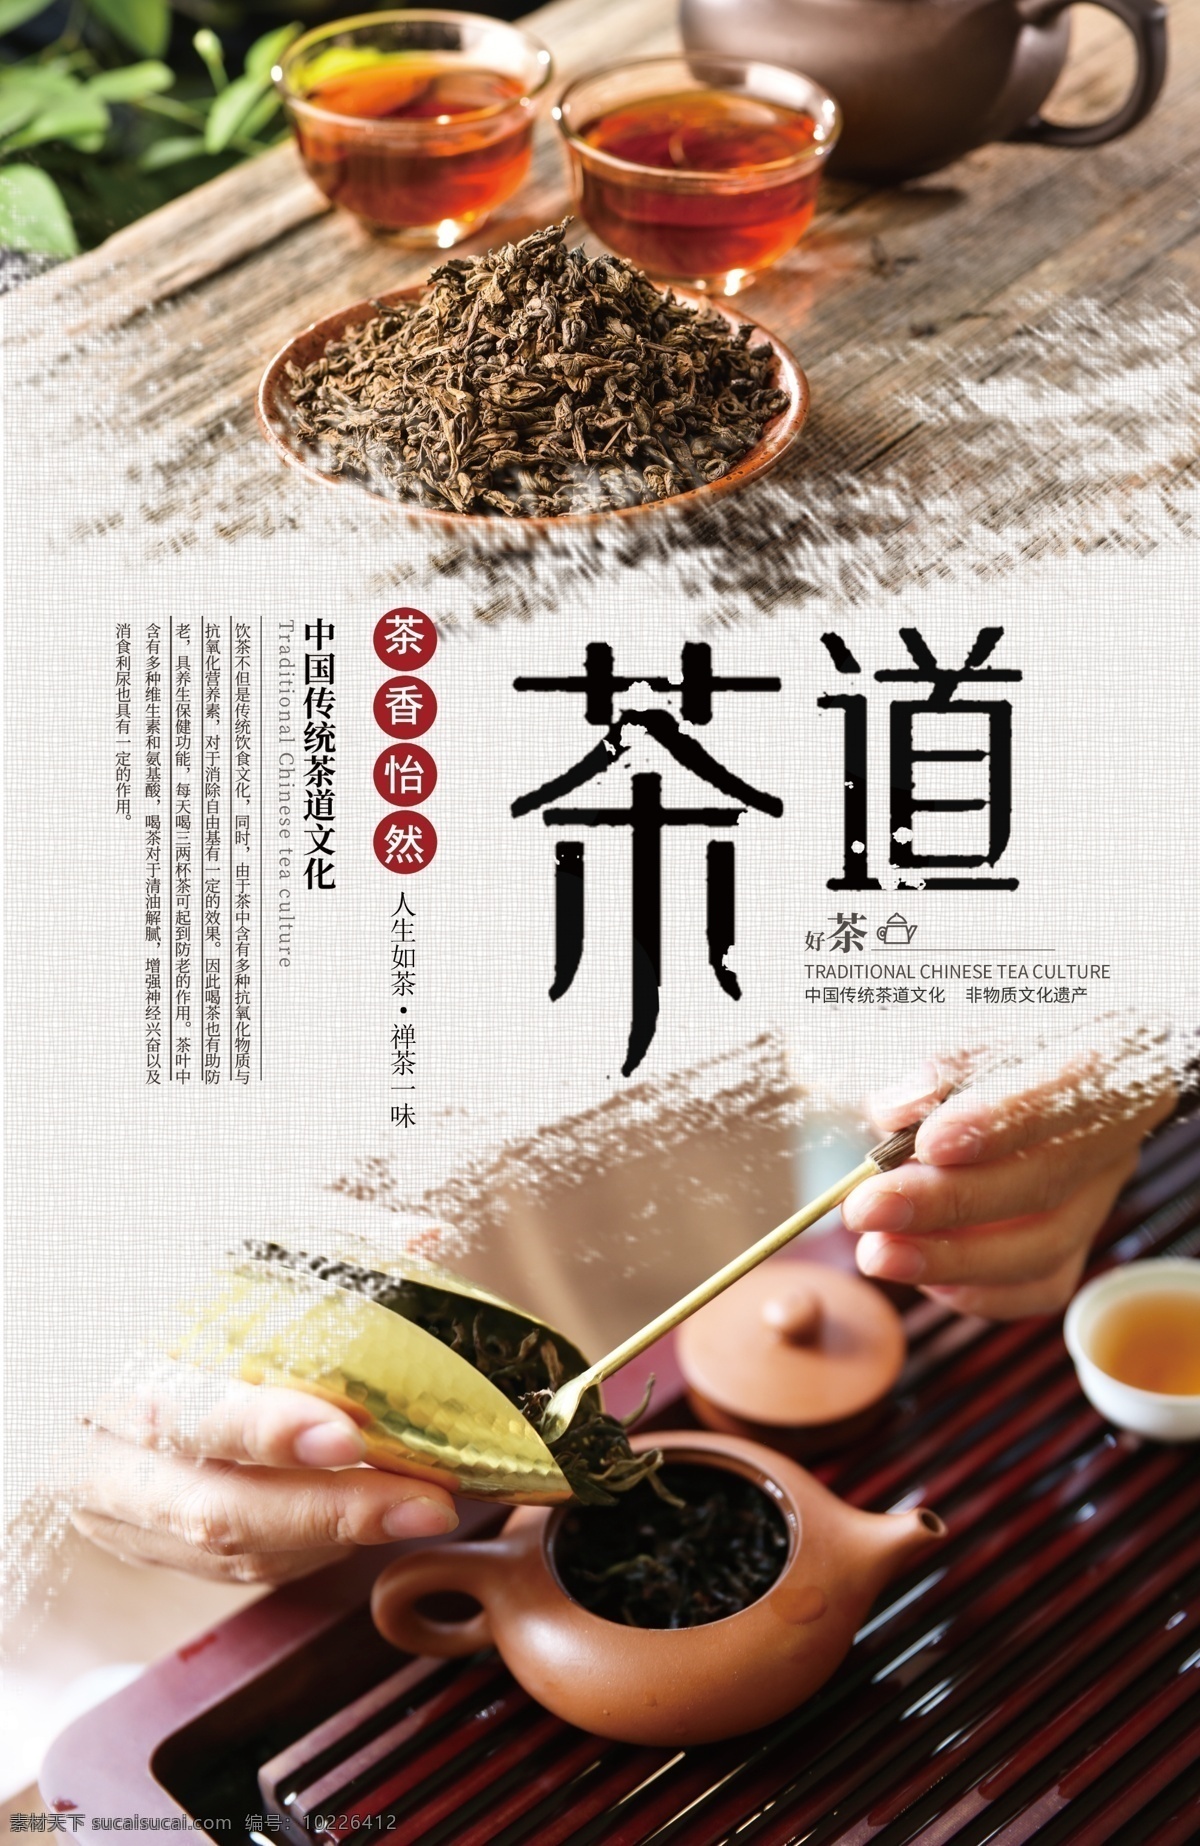 茶道文化展板 茶艺 茶文化 传统文化 品茶 沏茶 泡茶 红茶 绿茶 白茶 茶具 茶艺展板 人生如茶 禅茶一味